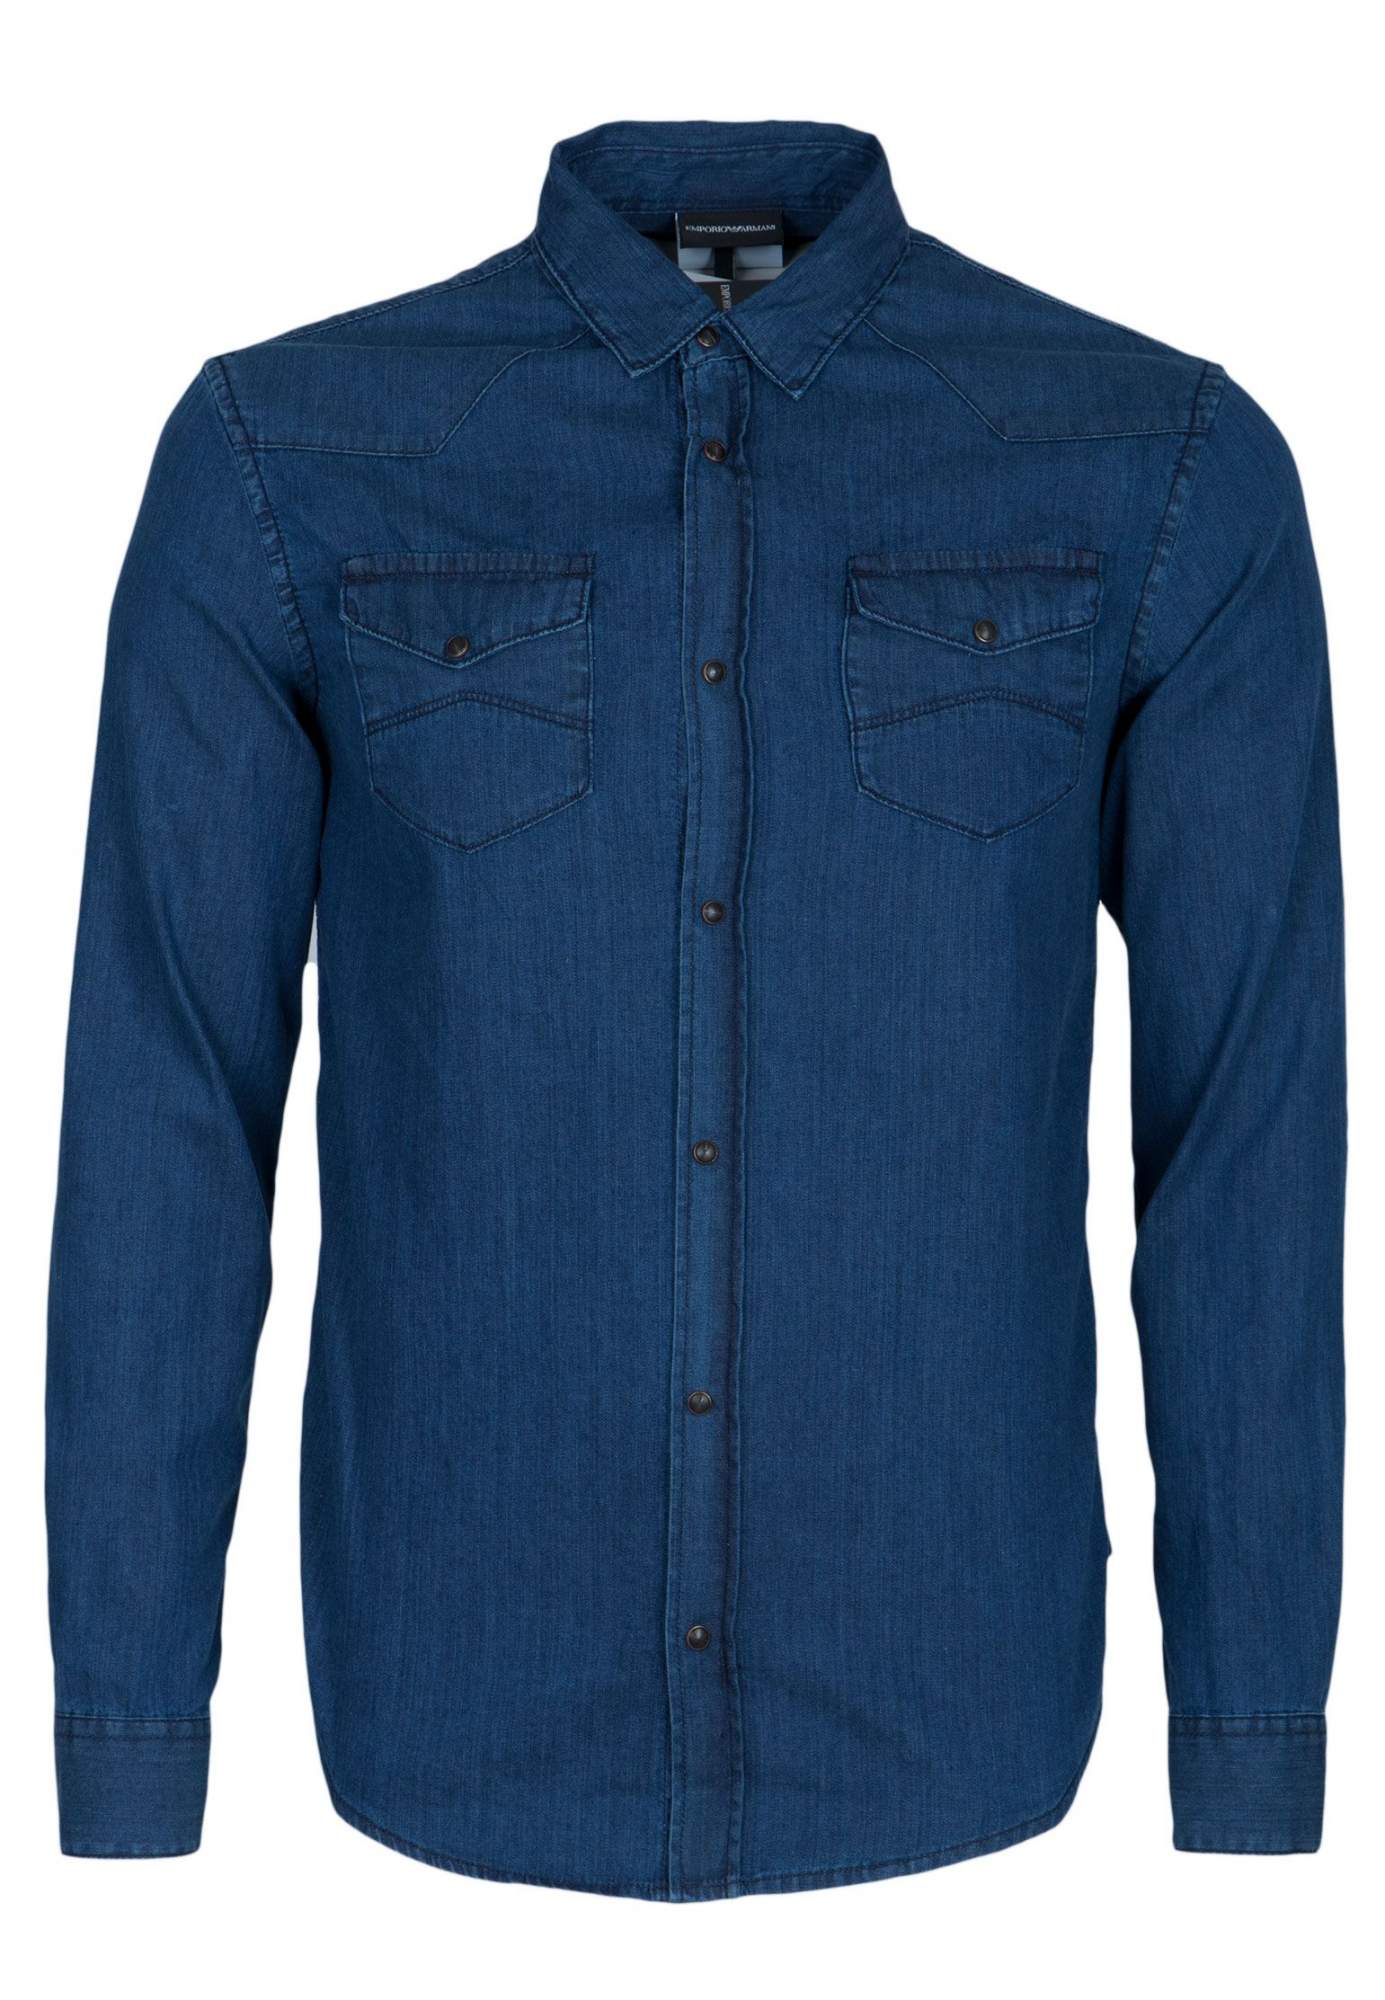 Джинсовая рубашка мужская Emporio Armani 99154 синяя M